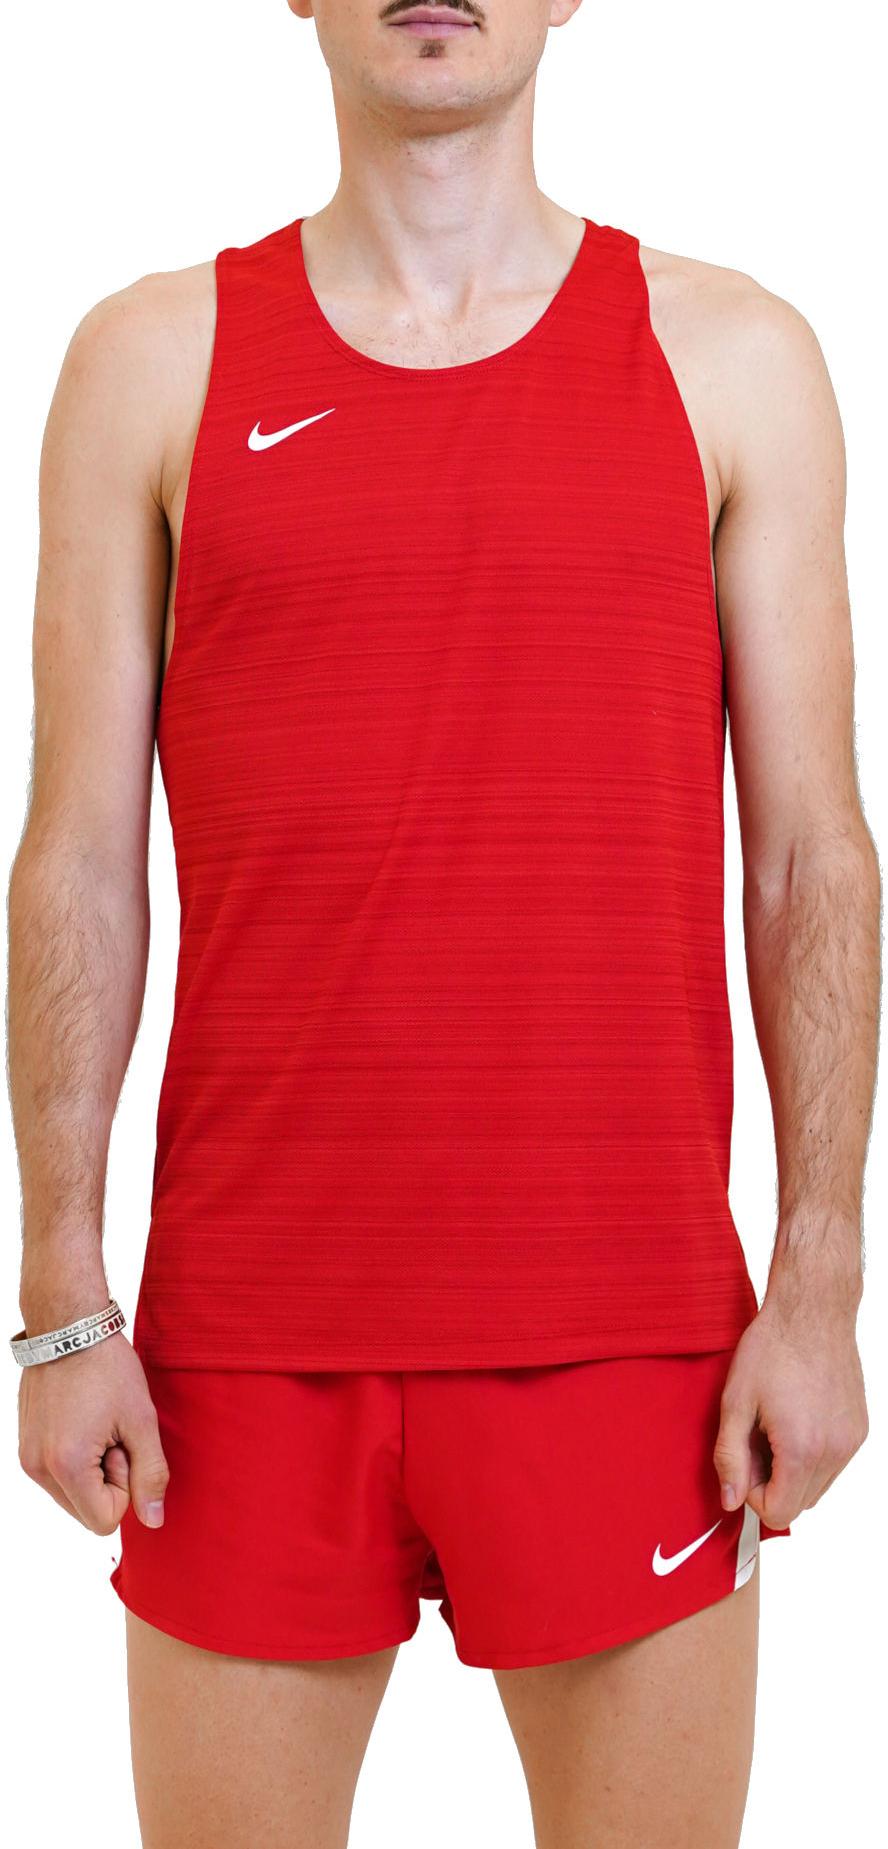 Folleto espectro Ambos Camiseta sin mangas Nike men Stock Dry Miler Singlet - Top4Running.es